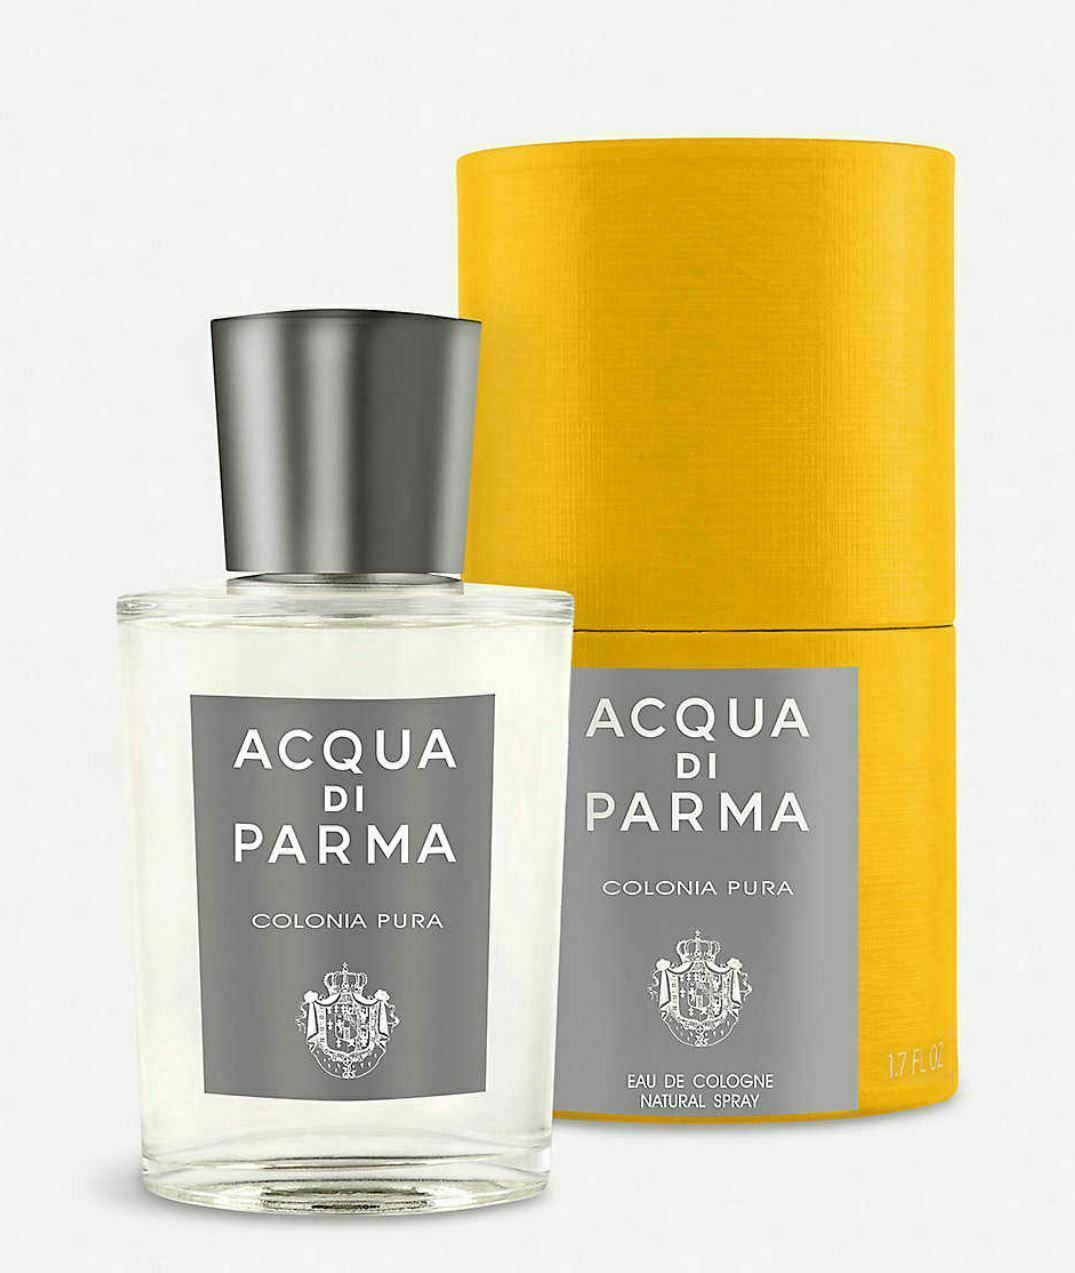 Acqua Di Parma Colonia Pura 1.7 oz Eau De Cologne Spray. New in Box